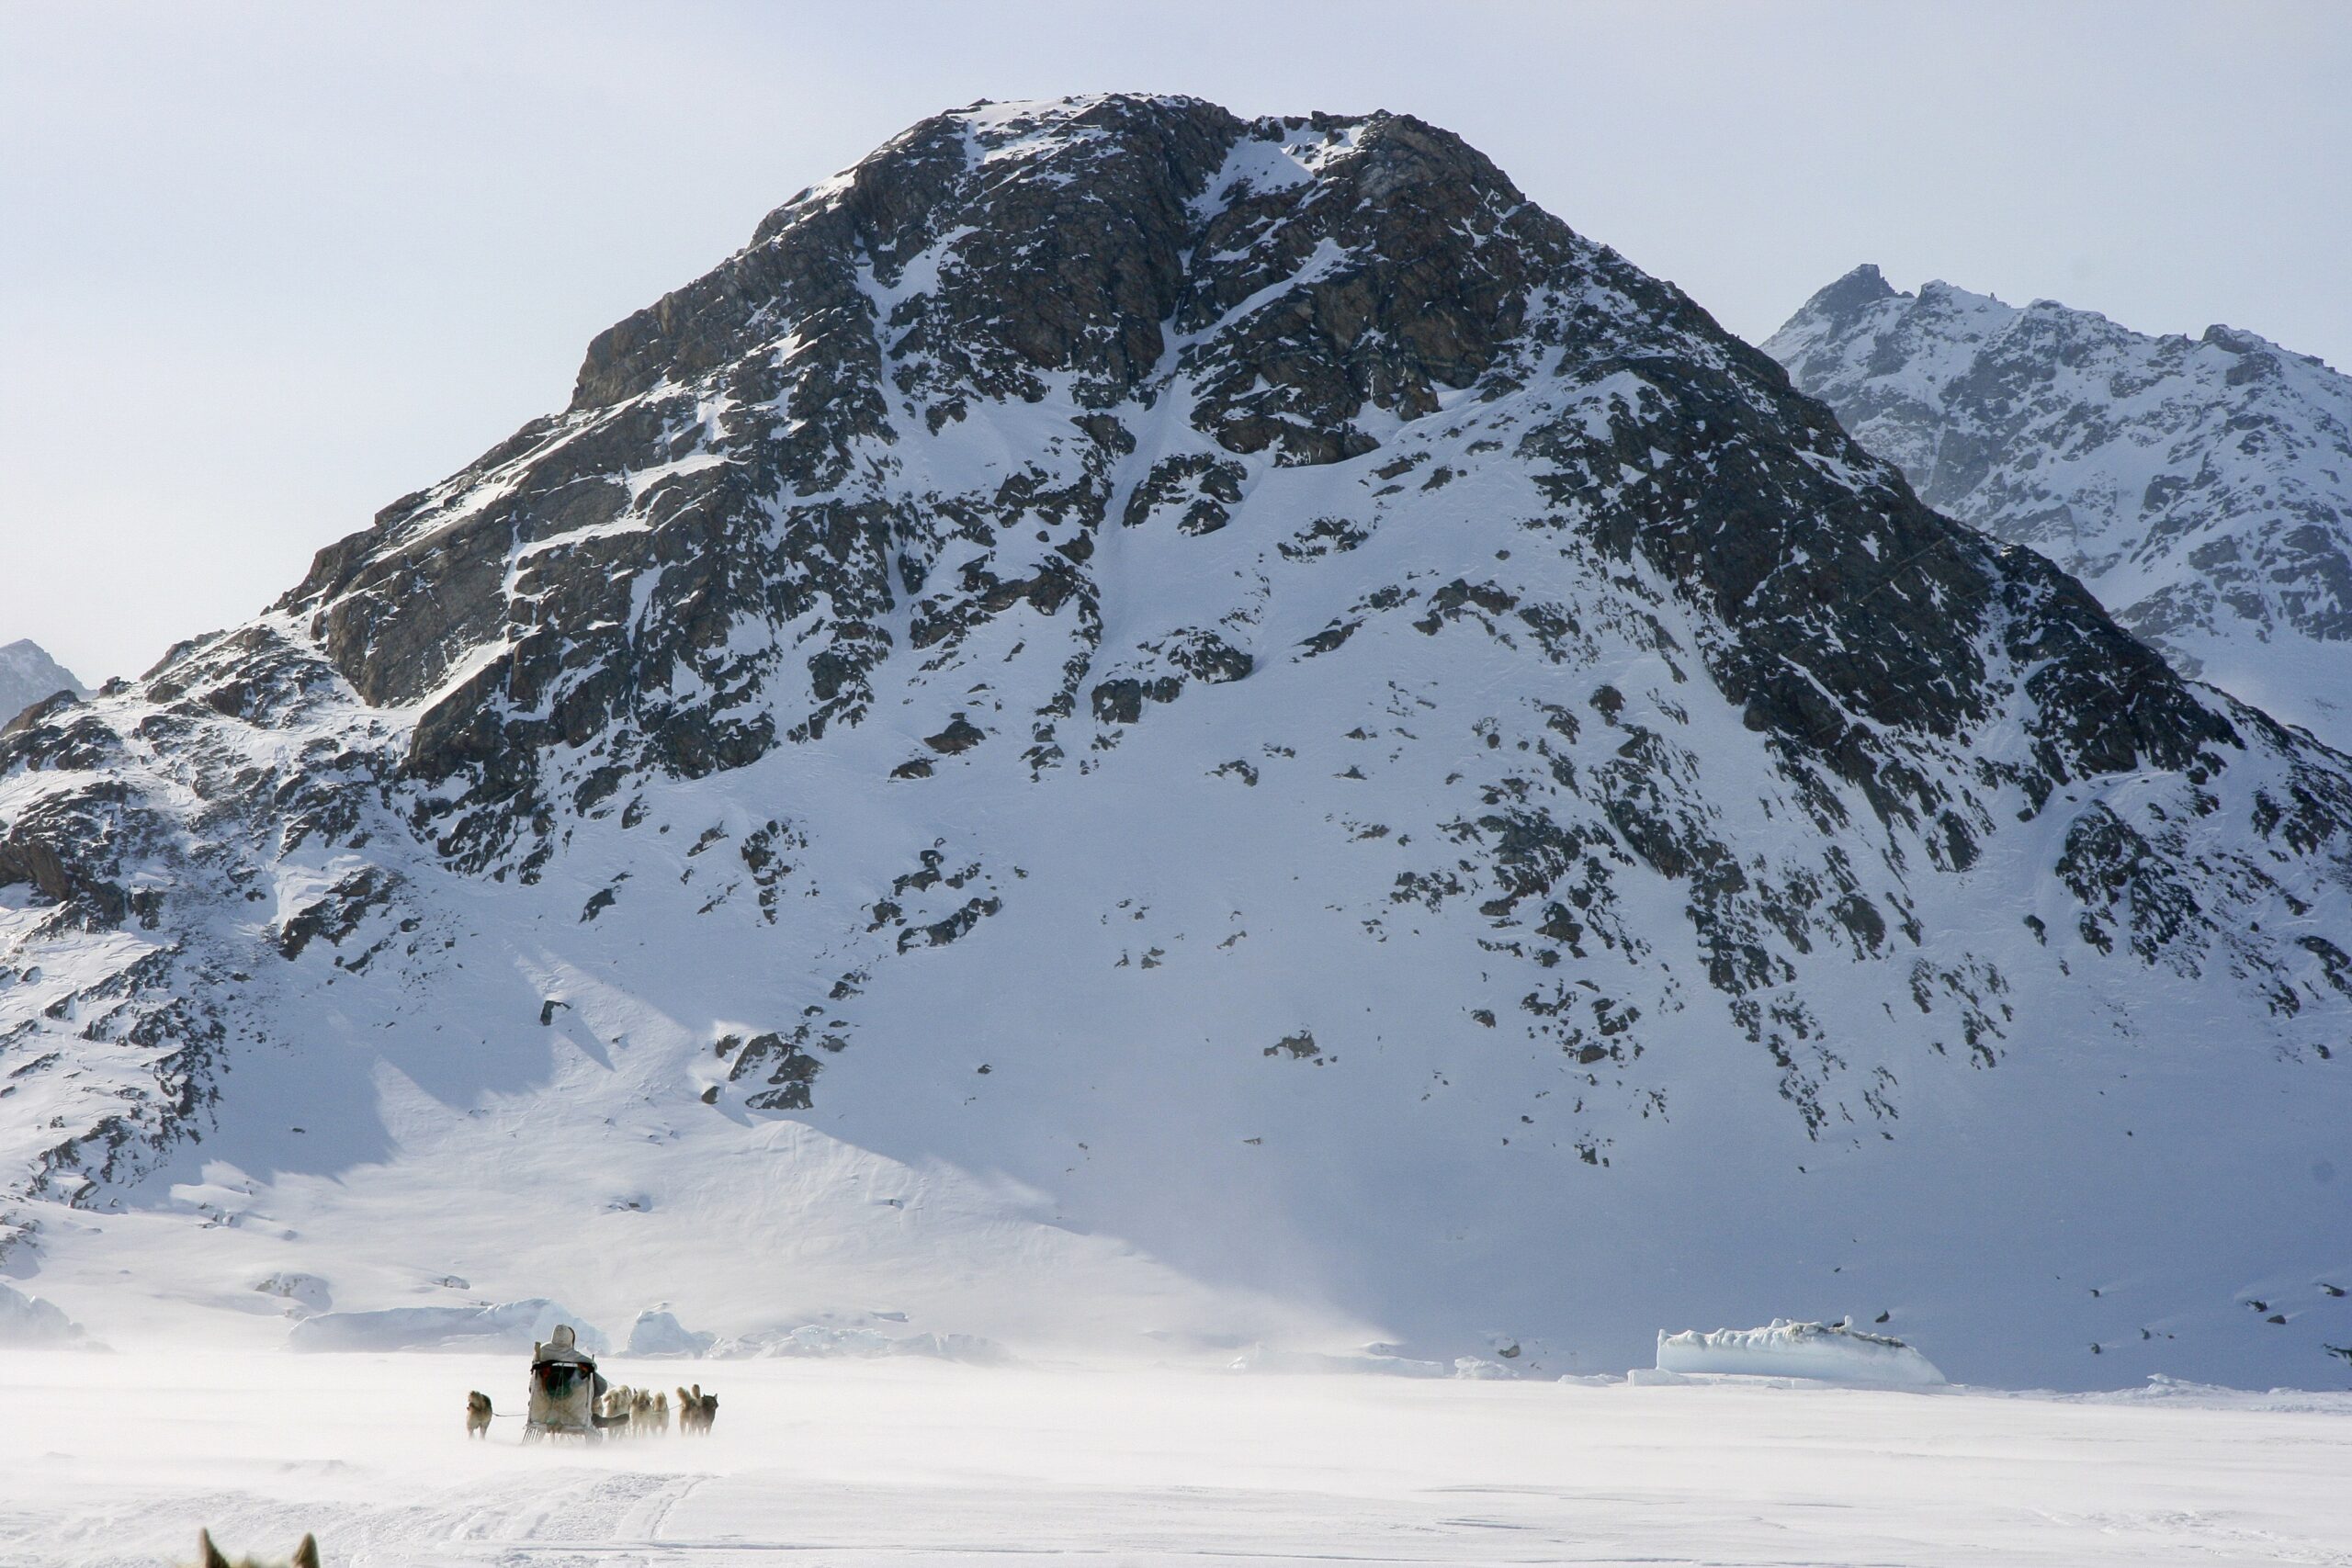 Dog Sledding to Tiilerilaaq. Photo by Lars Anker Møller